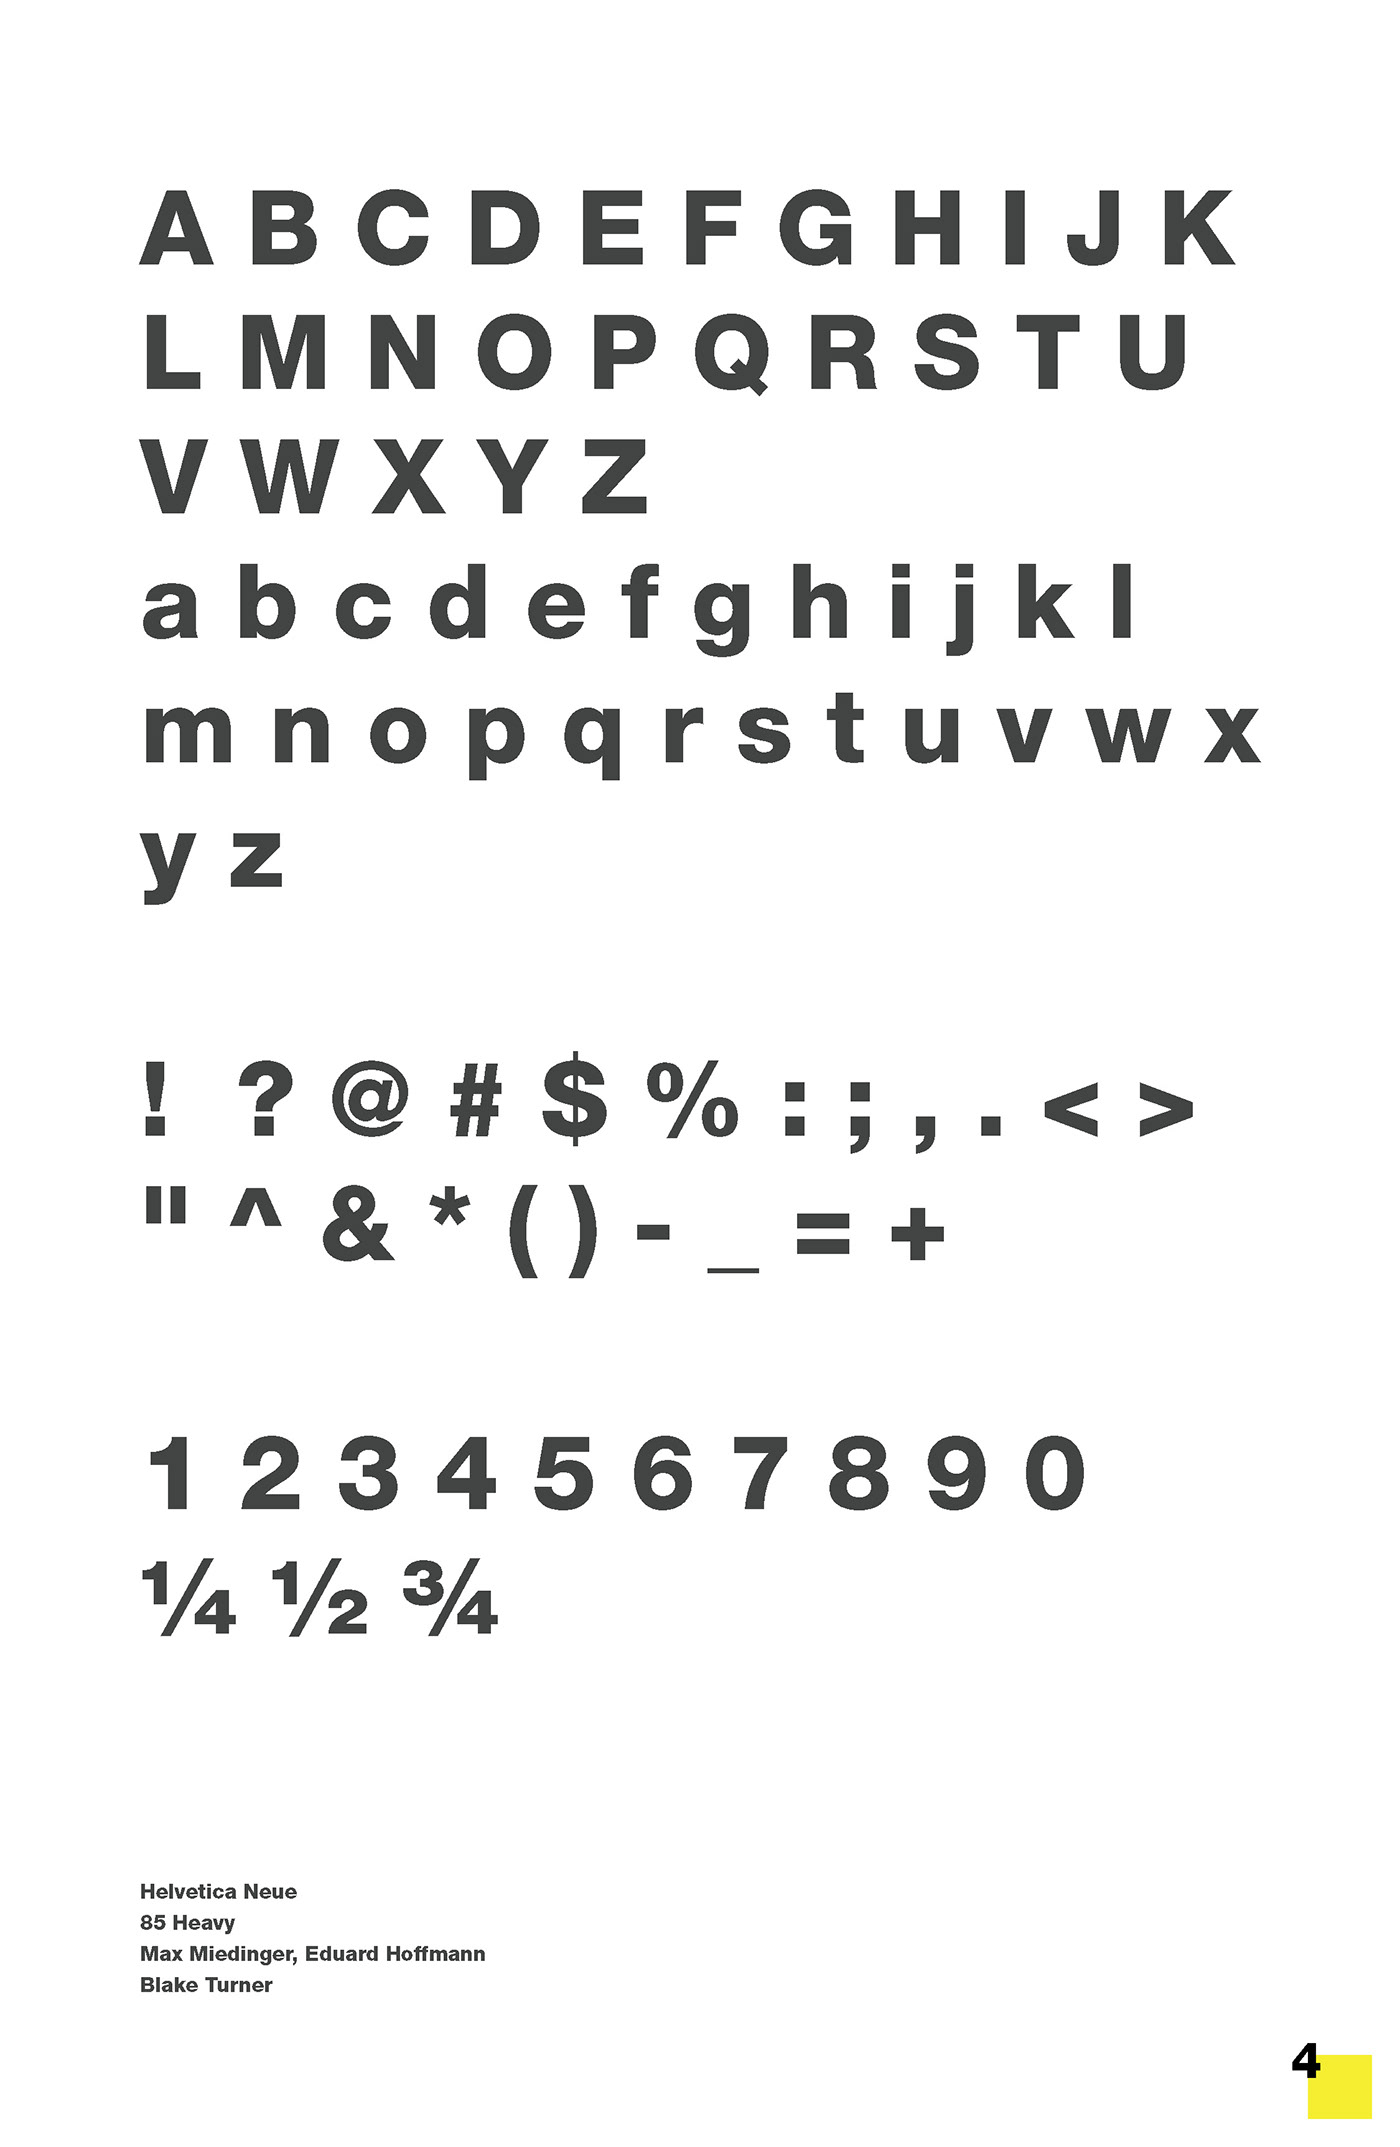 Anatomy of Type letterforms portfolio sans serif Typeface typeography